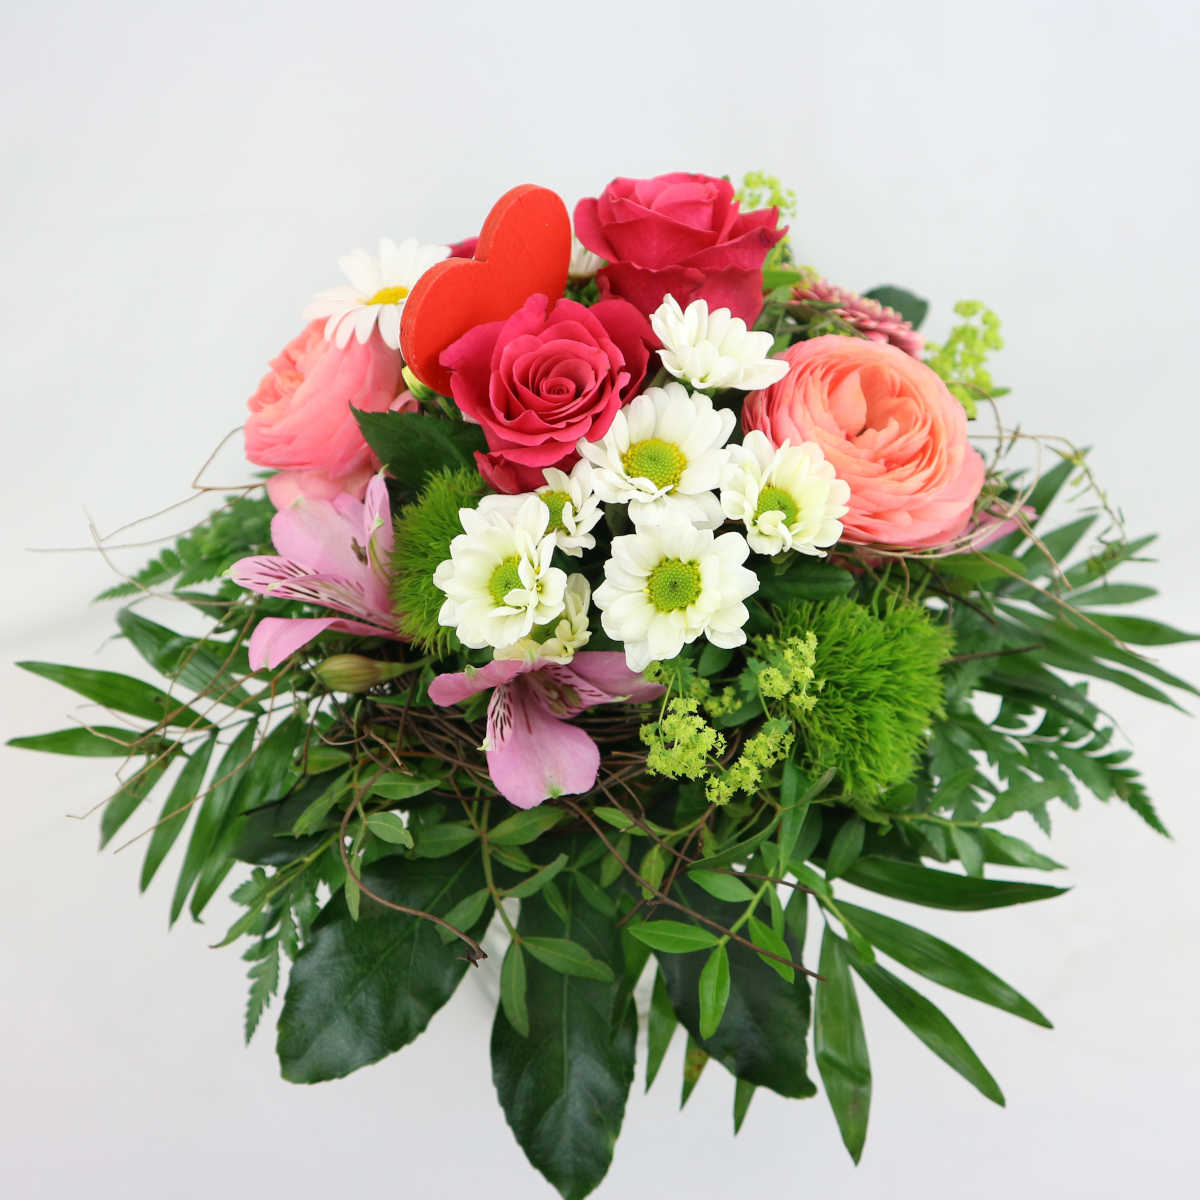 Ein sommerlicher Blumenstrauß zum Muttertag mit Rosen, Margariten, Gerbera, Inkalilie und Bonnys mit einem hözernen Herzstecker.